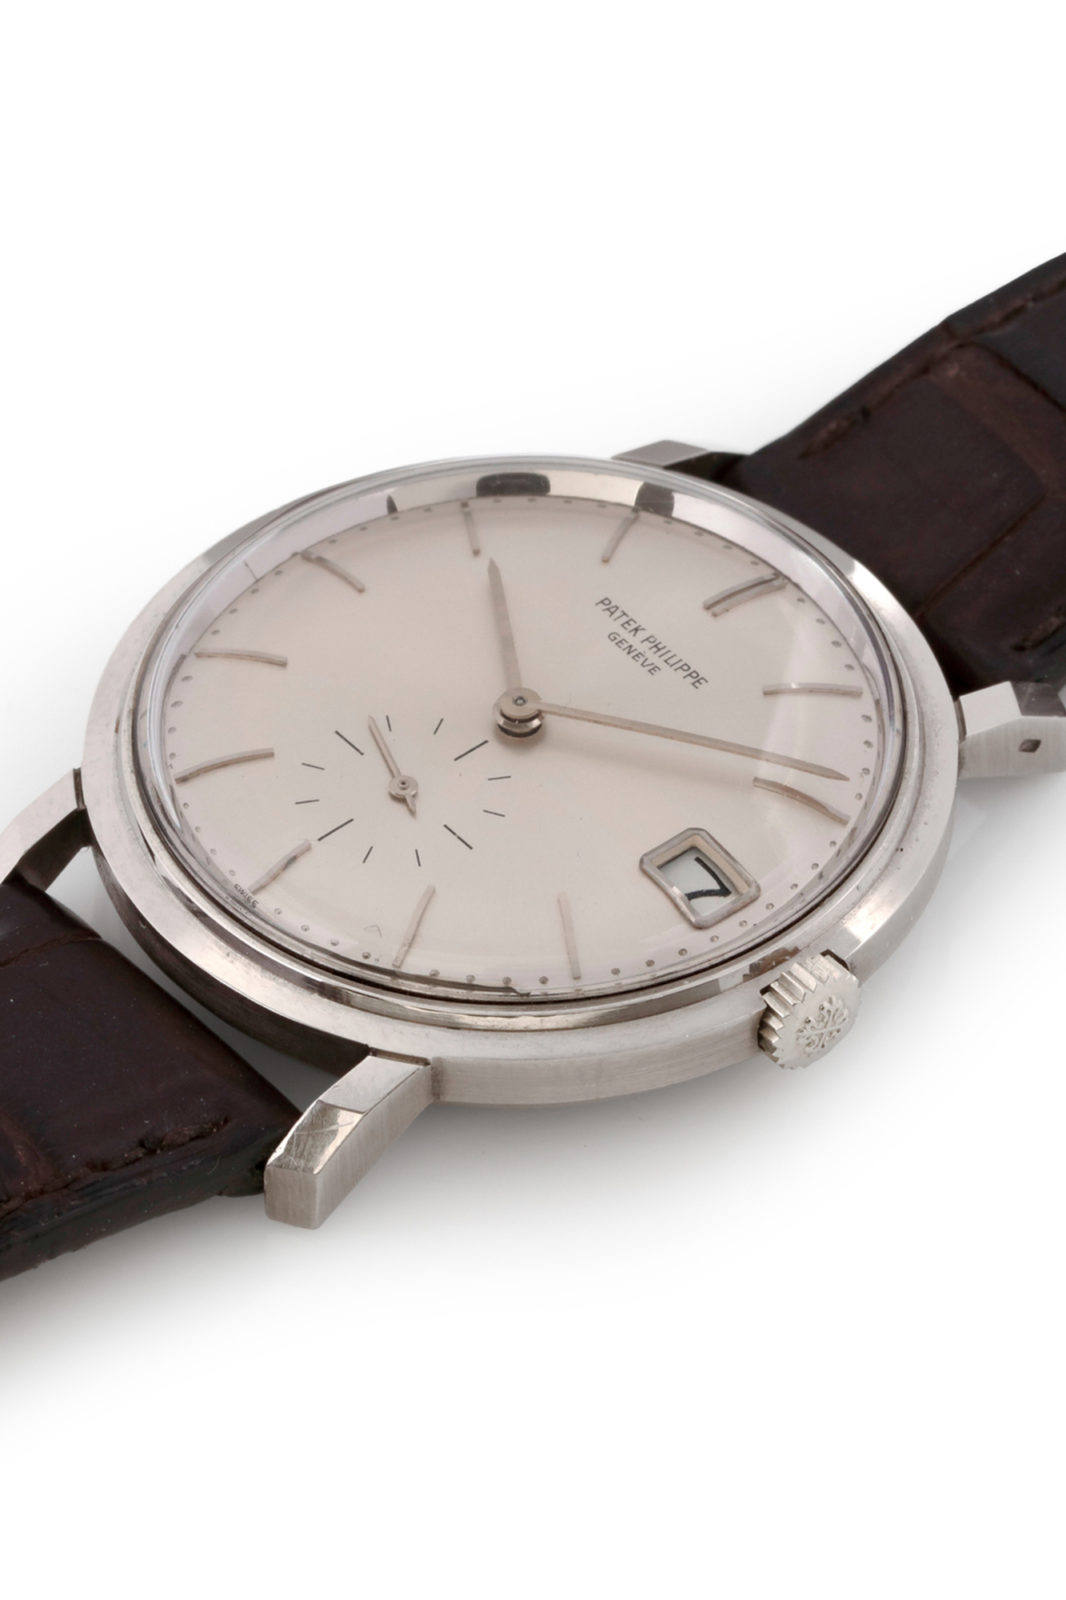 Antiquorum - Vente d'importantes montres récentes et de collection du 10 mai - Patek Philippe Calatrava 3445